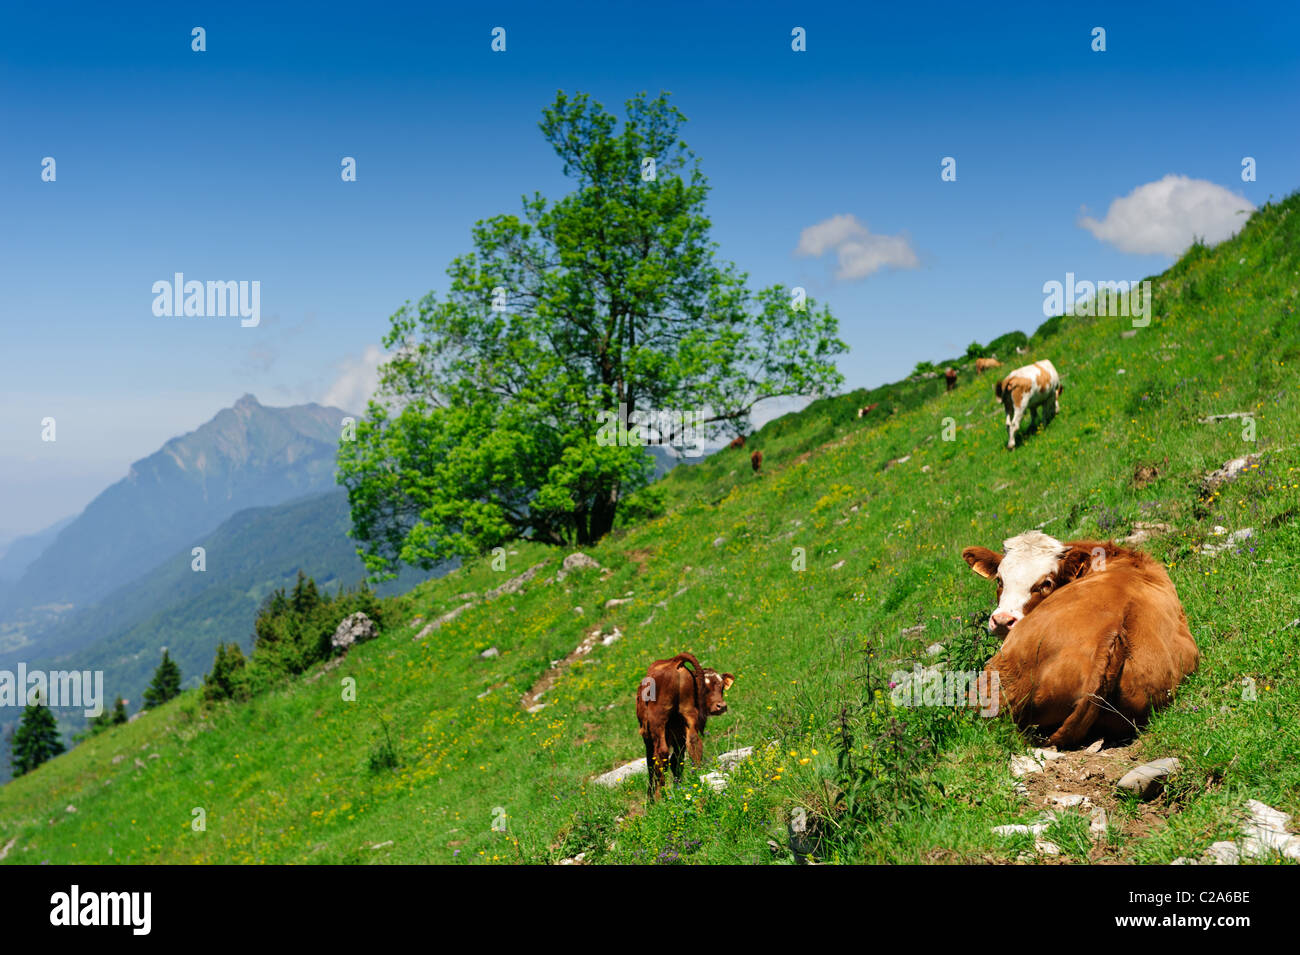 Kuh Kalb auf alpine Hang liegend mit grünen Wiese unter blauem Himmel. Flachen DOF, Fokus auf Kühe Augen. Stockfoto